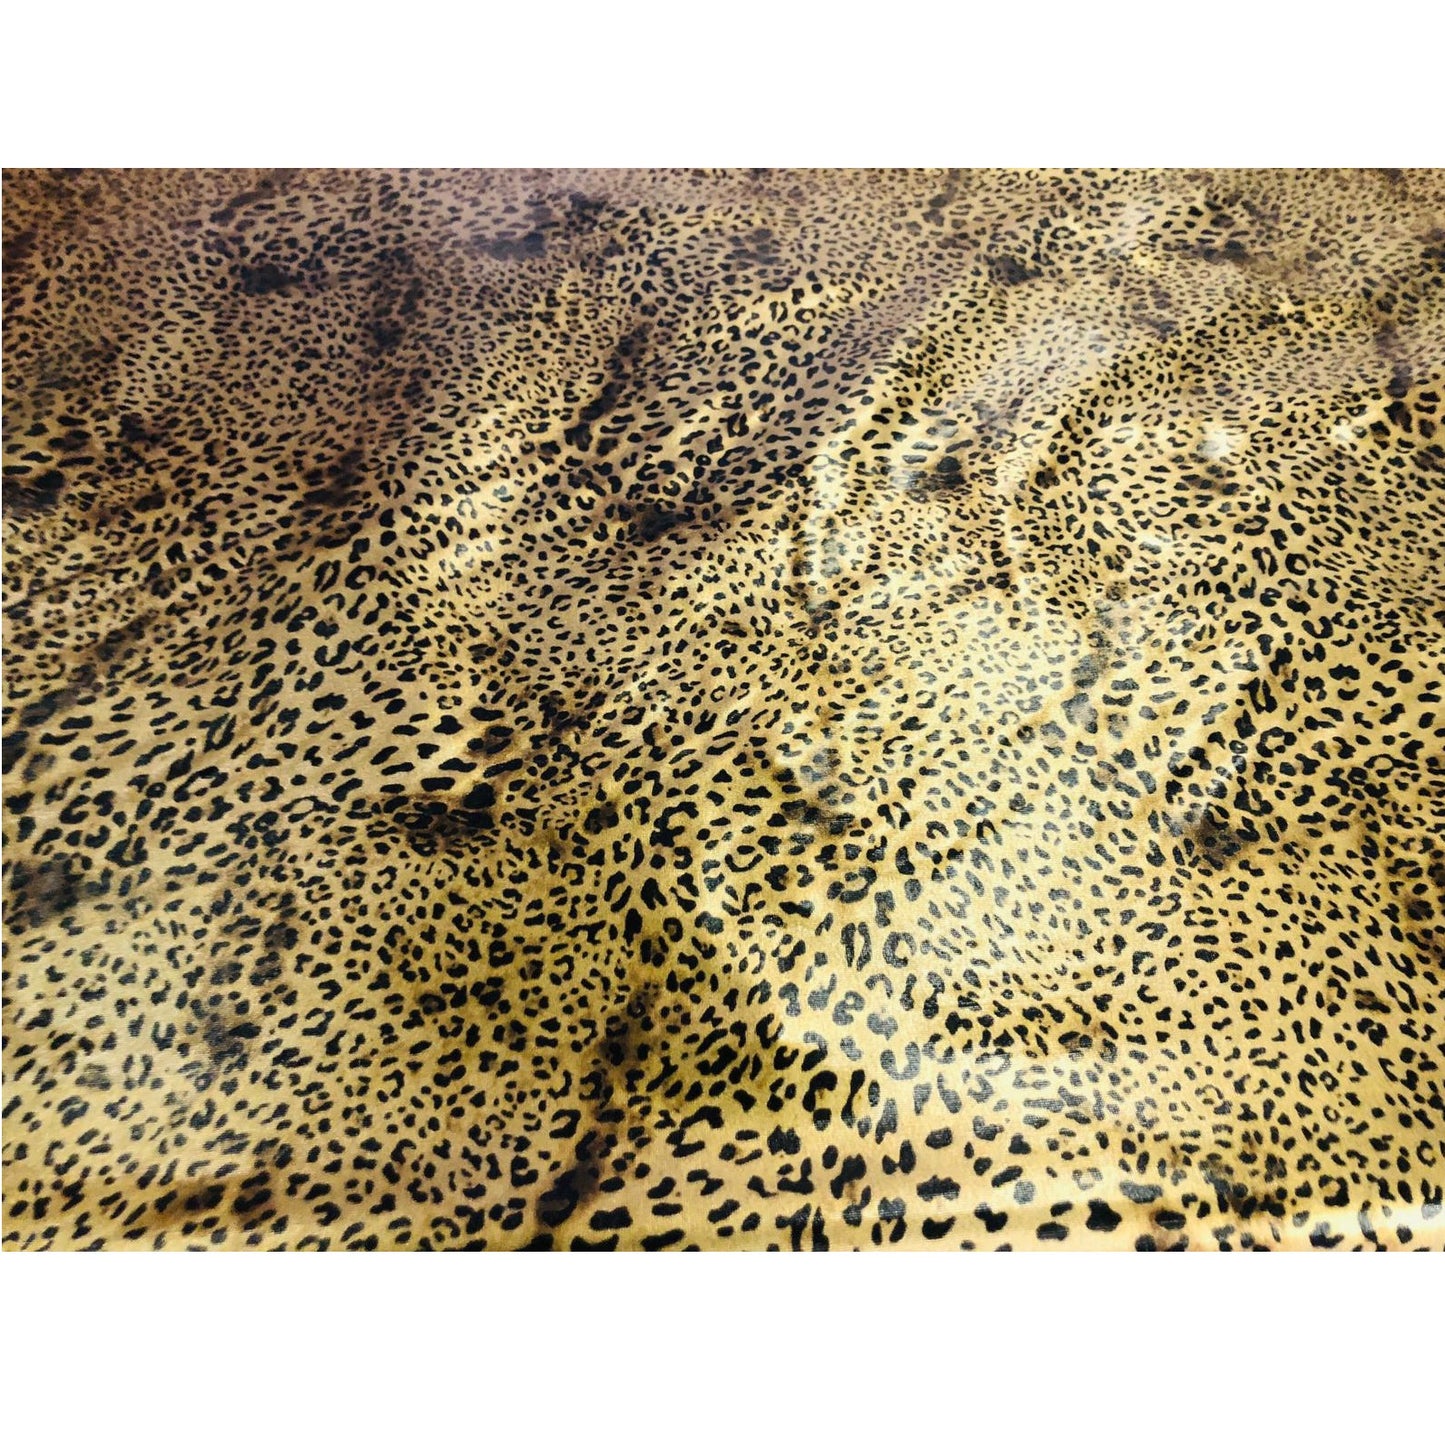 Stretch Lame - Leopard Print B